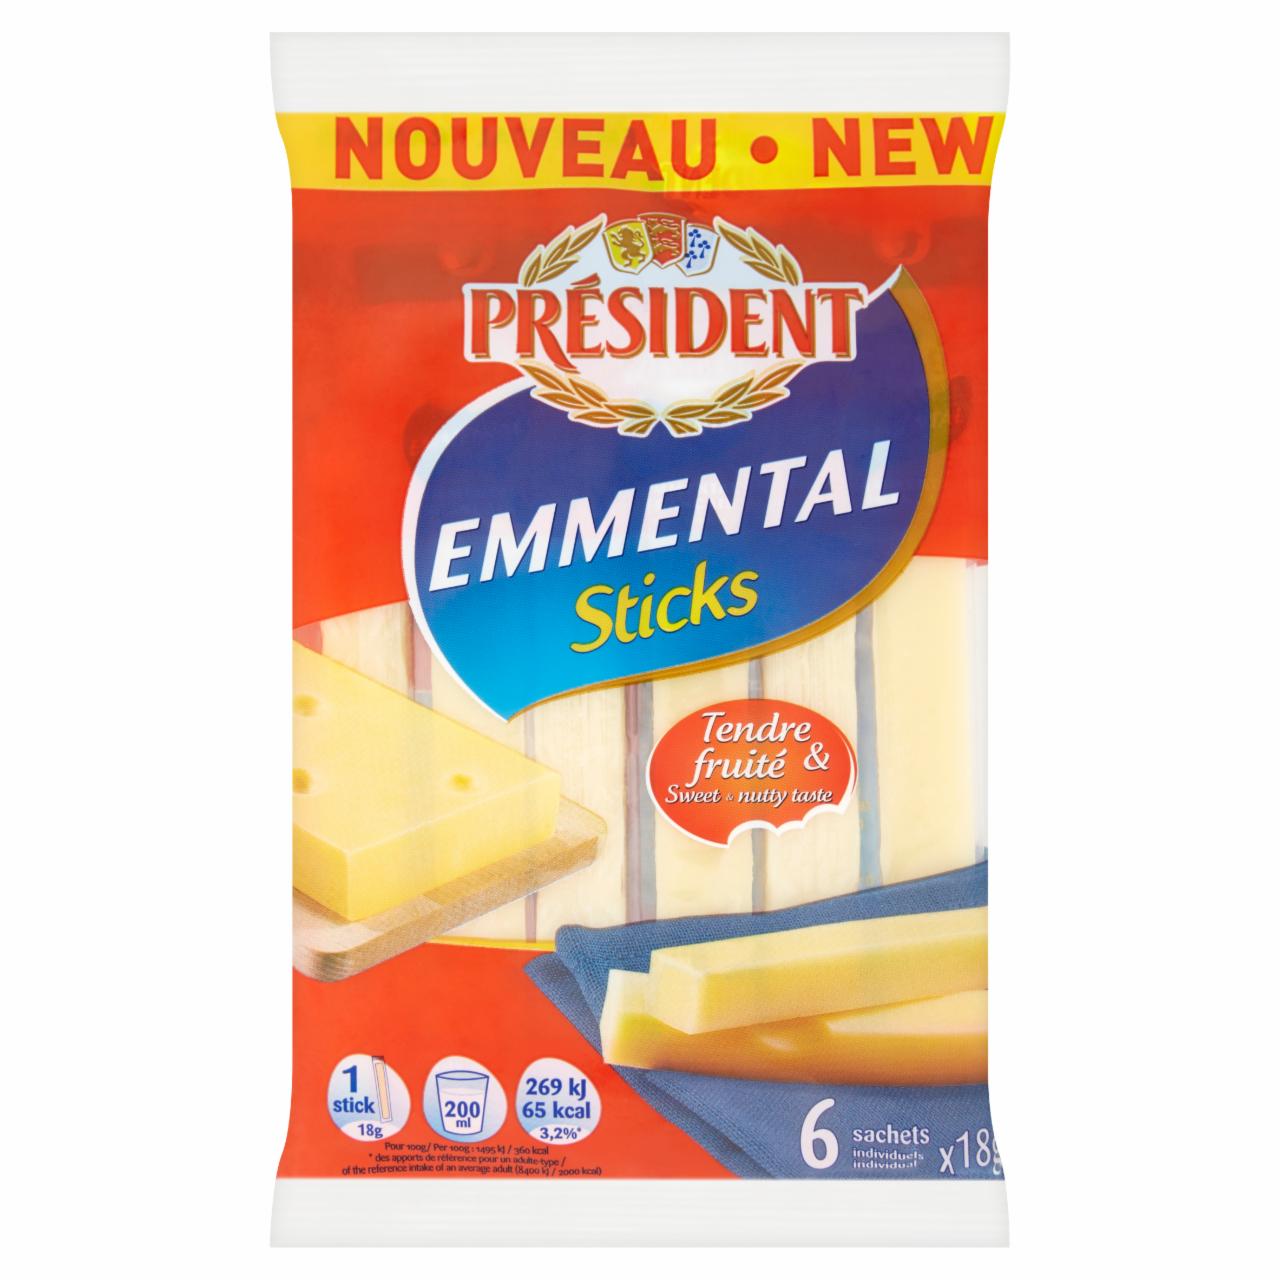 Képek - Président Emmental Sticks zsíros kemény sajt 108 g